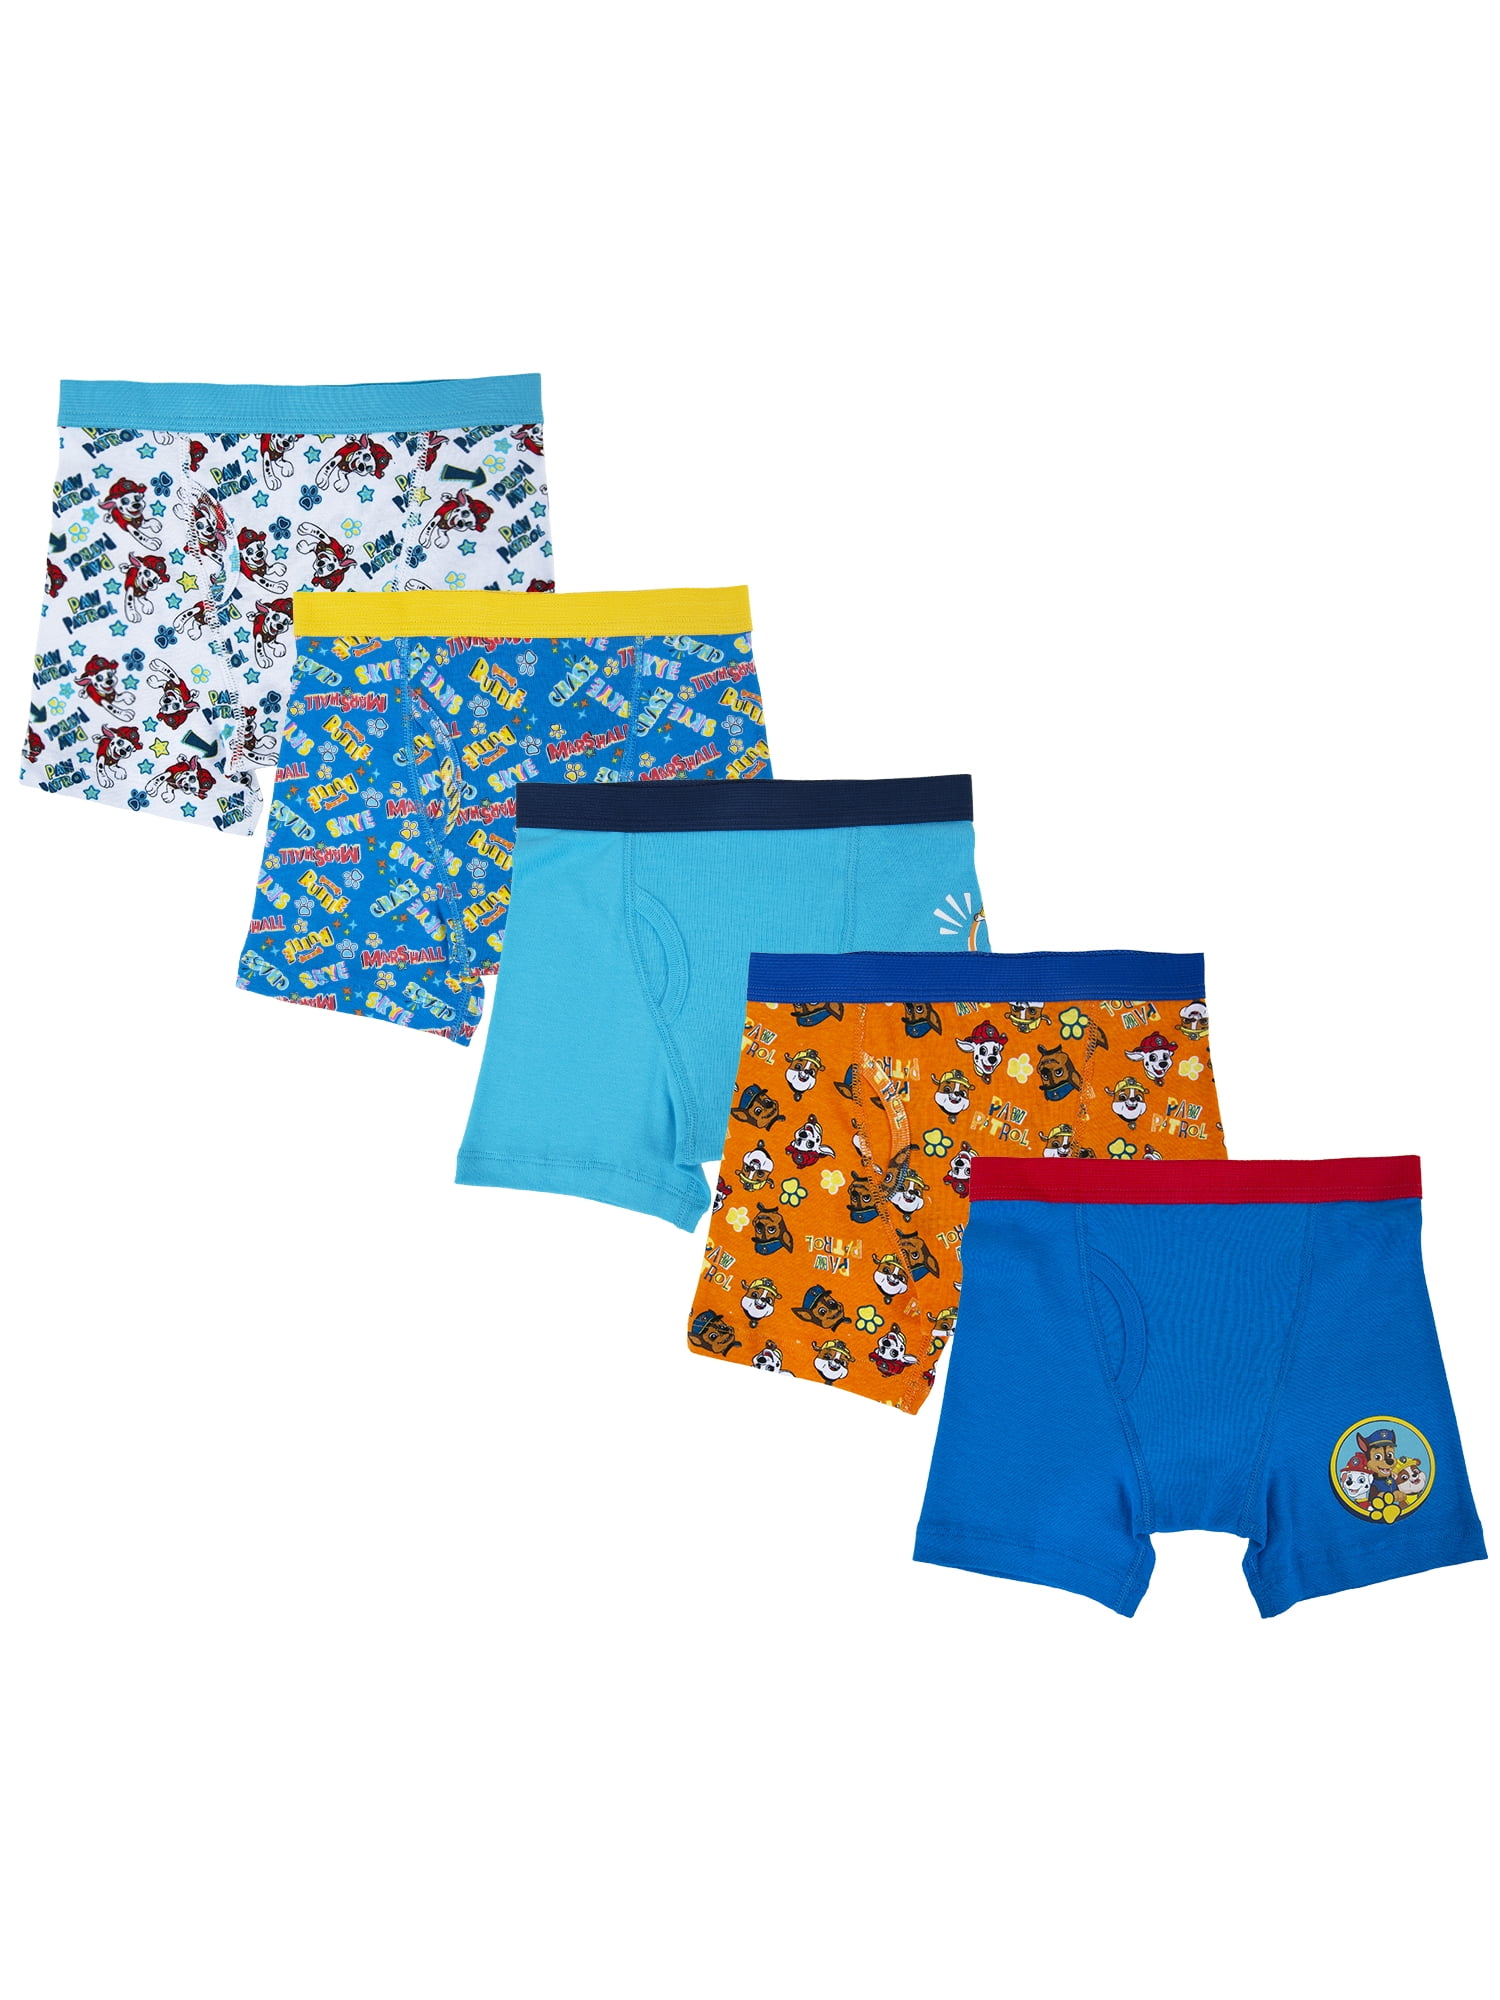 PAW Patrol Boys Underwear, 5 Pack Boxer Briefs Sizes 4-6